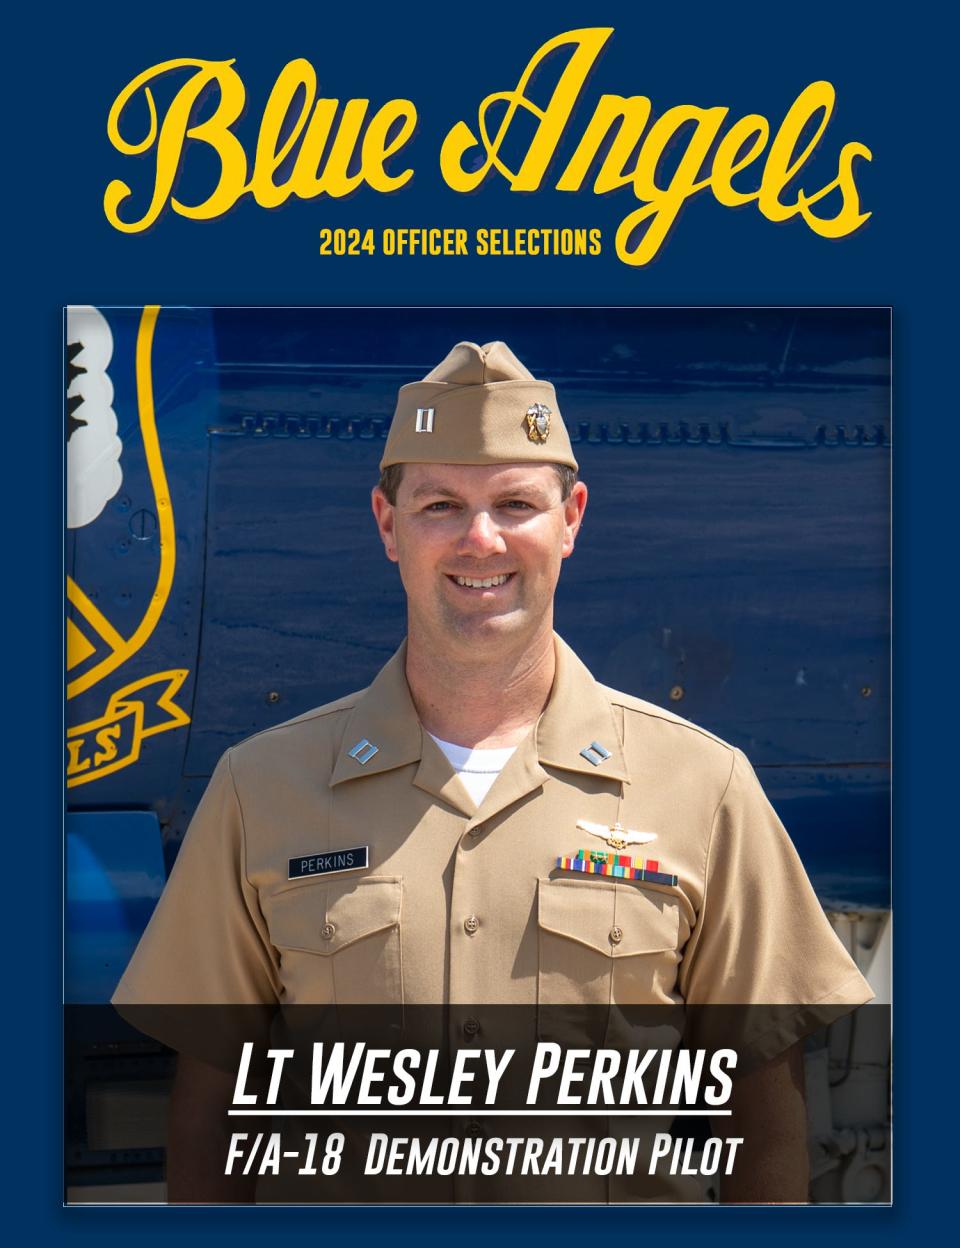 Lt. Wesley Perkins